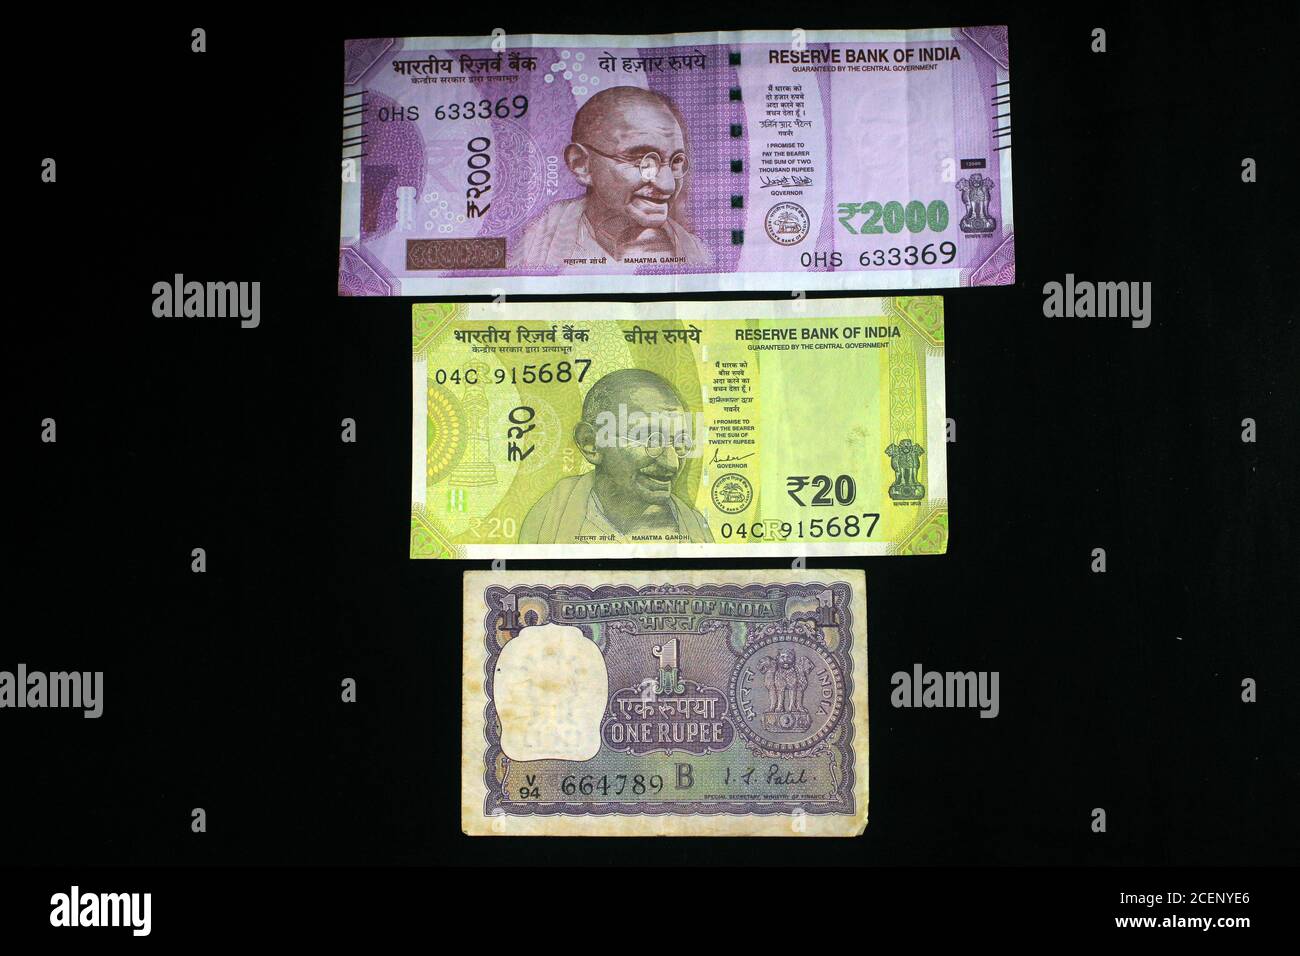 L'argent indien avec le concept de la nouvelle année 2021 sur fond noir. Concept du nouvel an 2021 avec la monnaie indienne. Devises indiennes sur fond noir. Banque D'Images